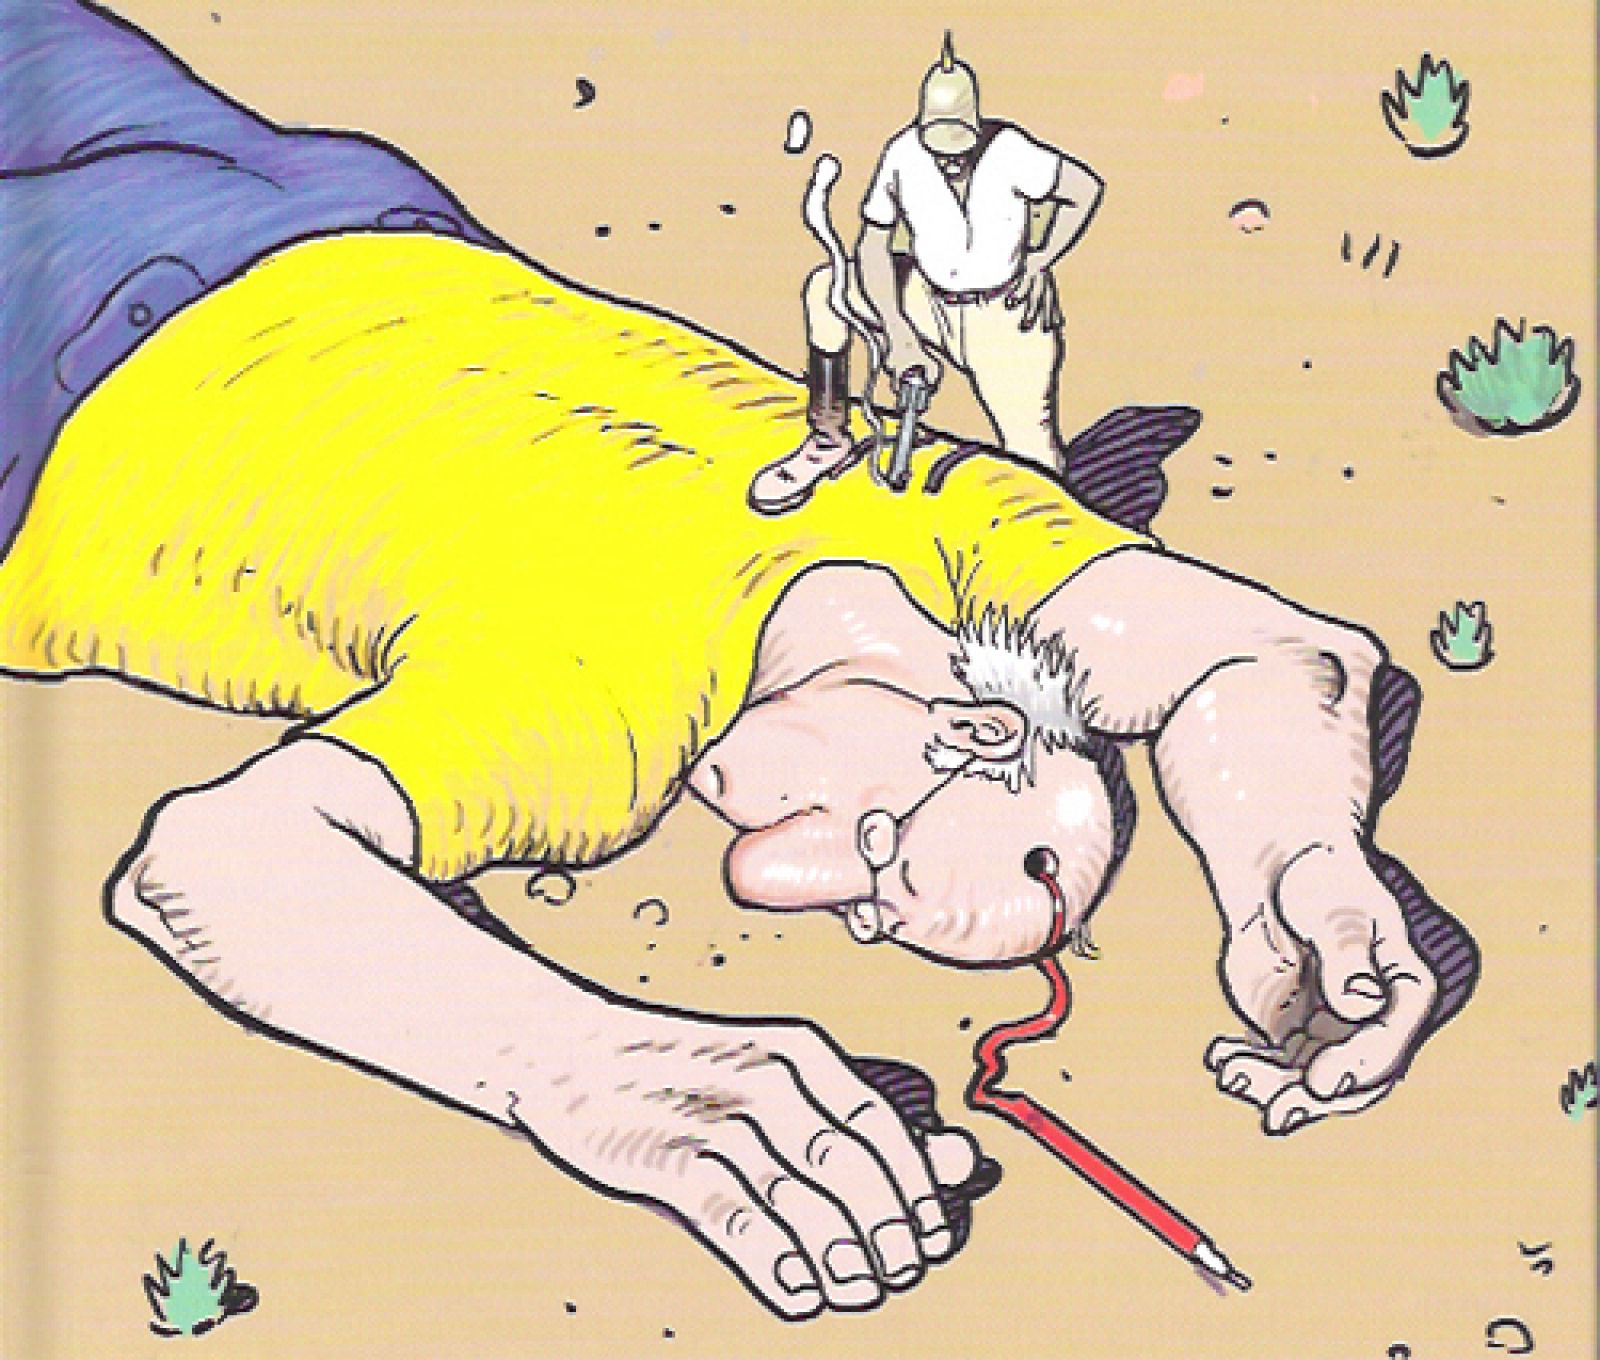 Con casi 70 años el creador de cómics se reinventa a sí mismo con este nuevo trabajo que ahora se publica en España. En la imagen se autorretrata asesinado por uno de sus personajes, el Mayor Hubert de 'El garaje hermético' Y la sangre que brota de su cerebro se convierte en un lápiz en una bella metáfora de la creatividad.